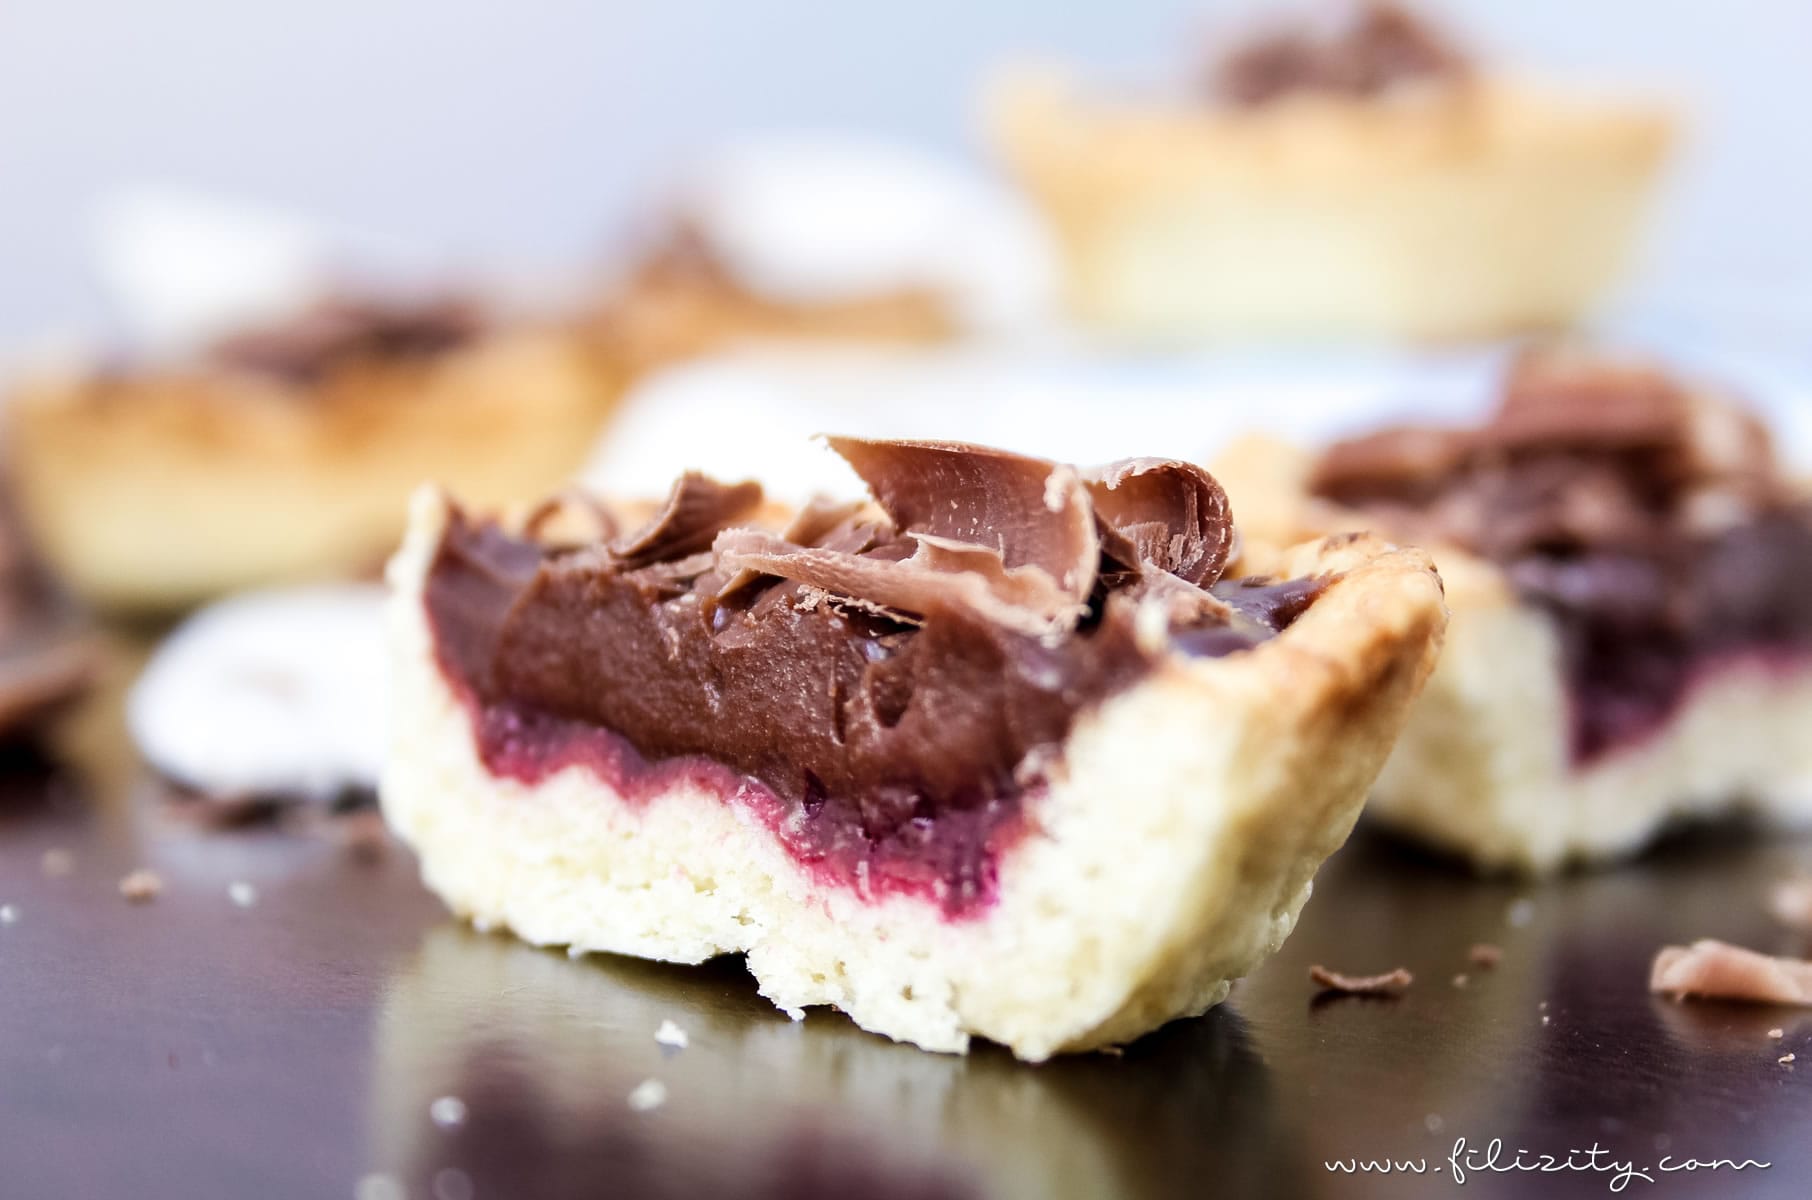 Vegane Schoko-Törtchen mit Brombeer-Fruchtspiegel | Filizity.com | Food-Blog aus dem Rheinland #vegan #dessert #schokolade #torte